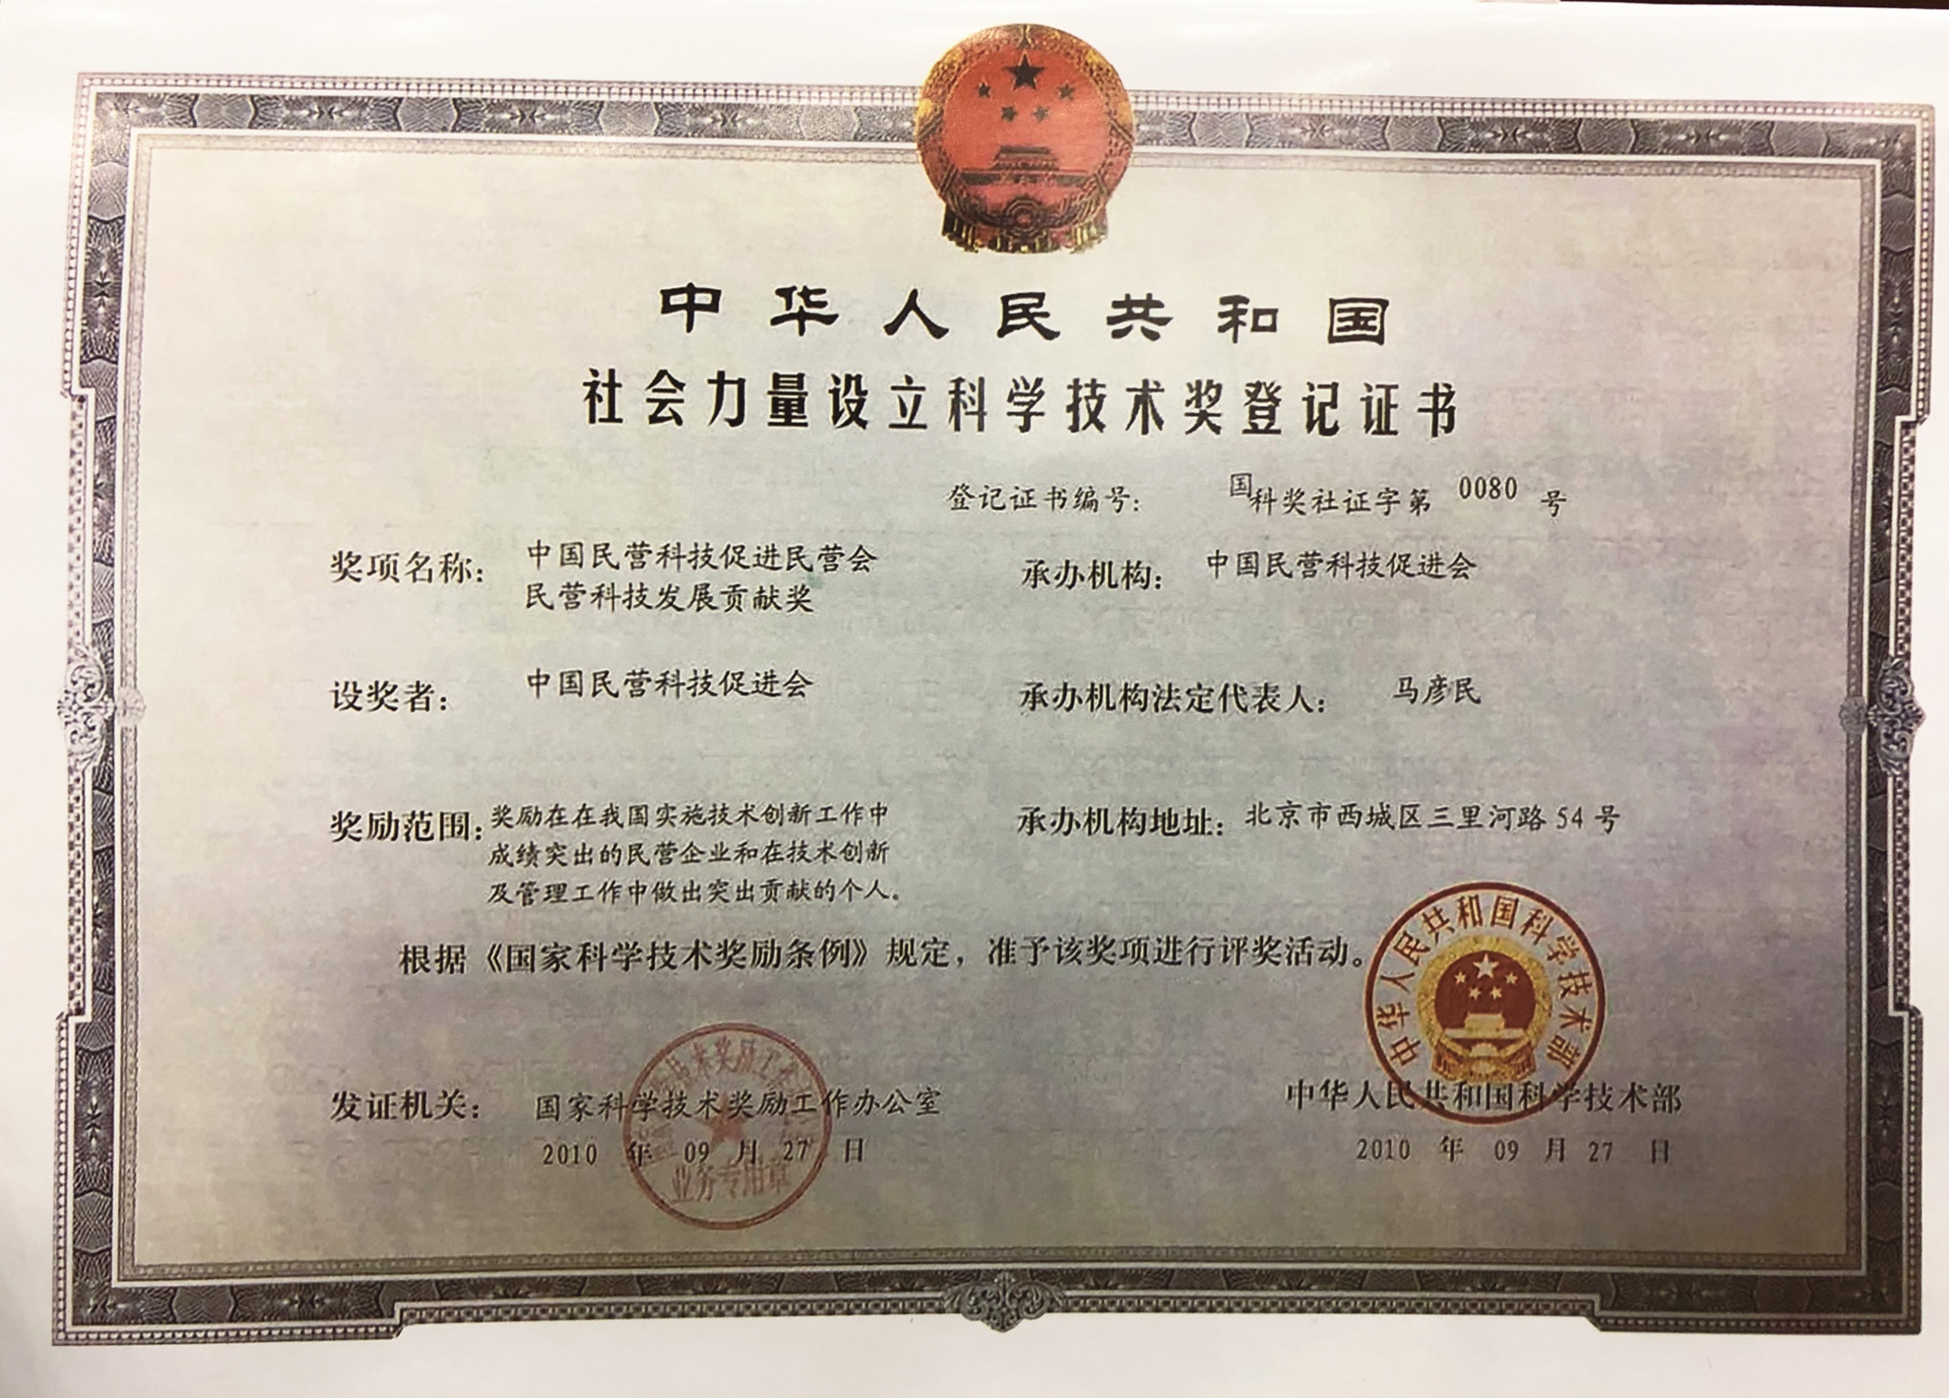 中国民营科技促进会民营科技发展贡献奖设立证书